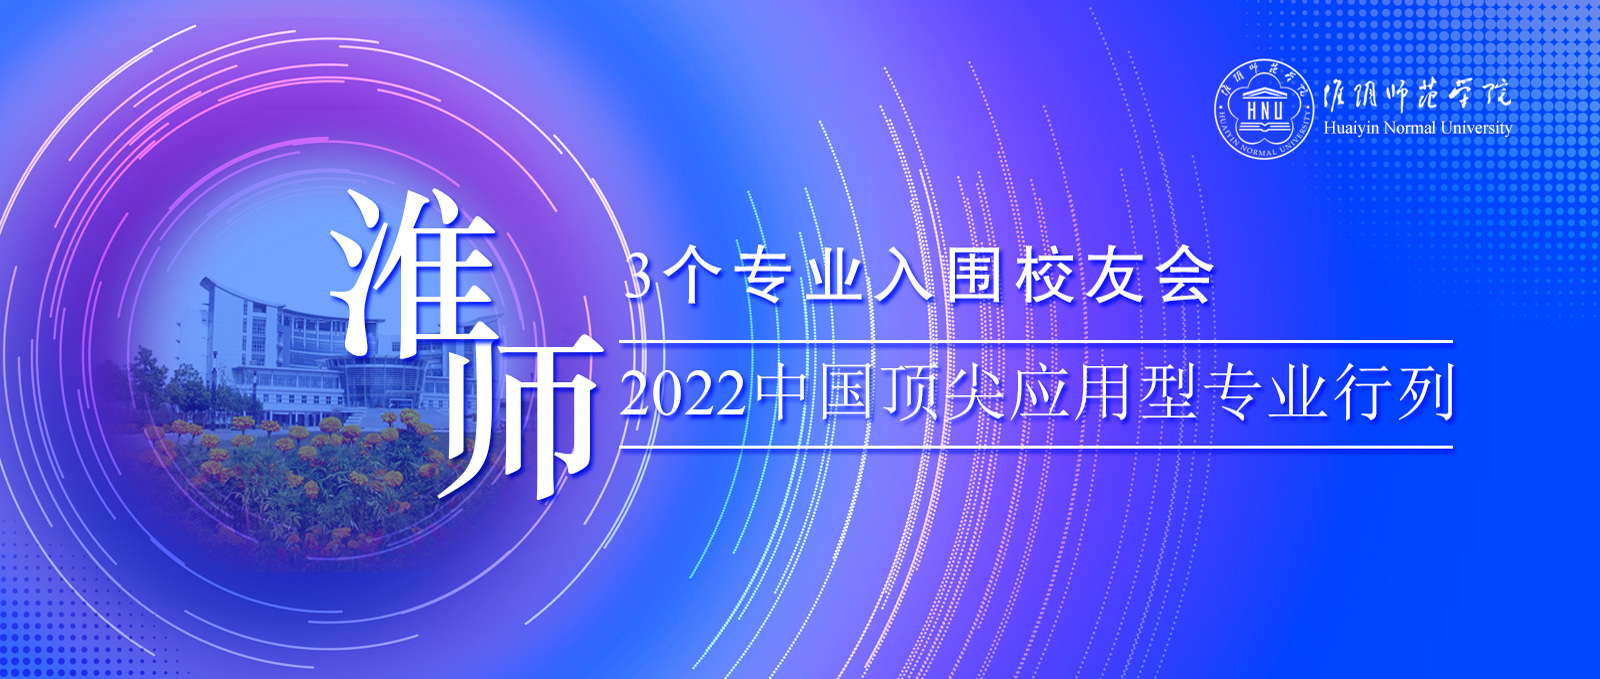 淮师3个专业入围校友会2022中国顶尖应用型专业行列